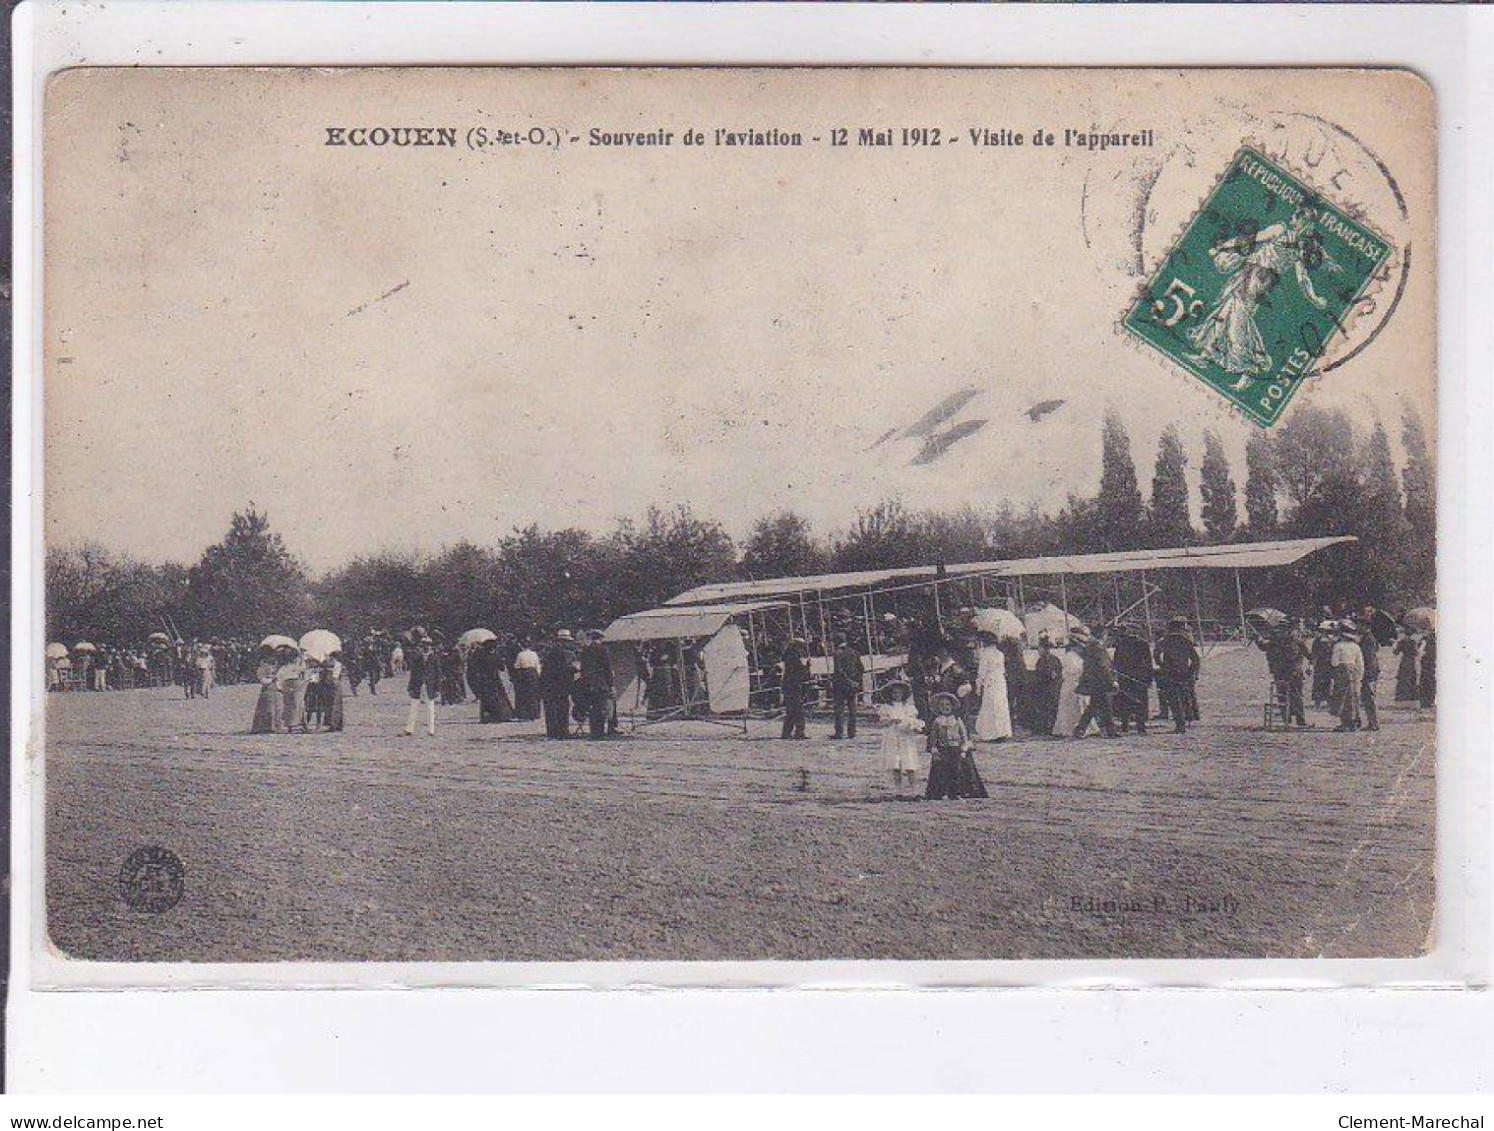 ECOUEN: Souvenir De L'aviation 12 Mai 1912, Visite De L'appareil - état - Ecouen